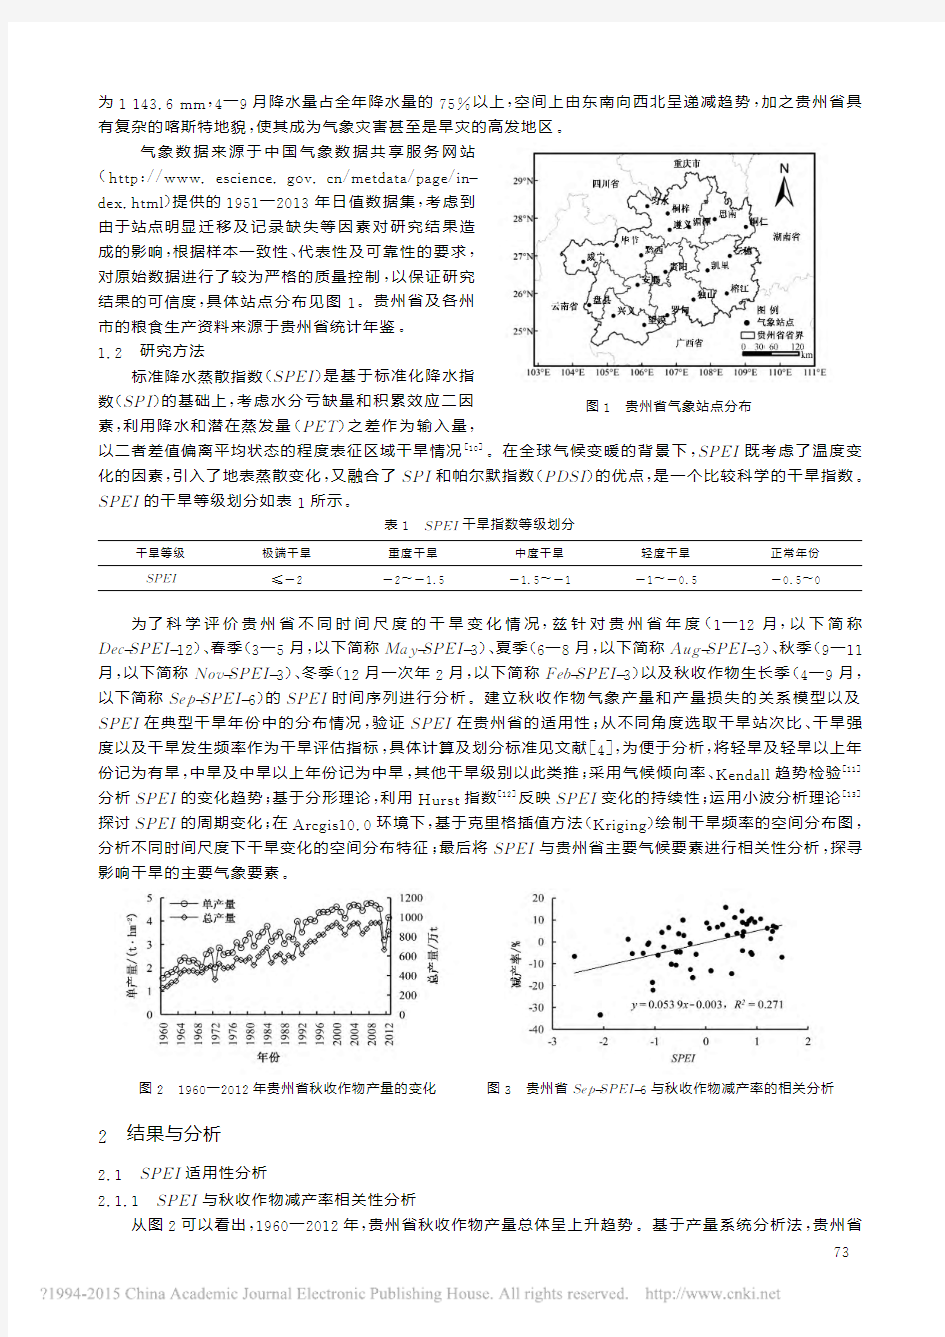 贵州省干旱时空变化特征及其对气候变化的响应